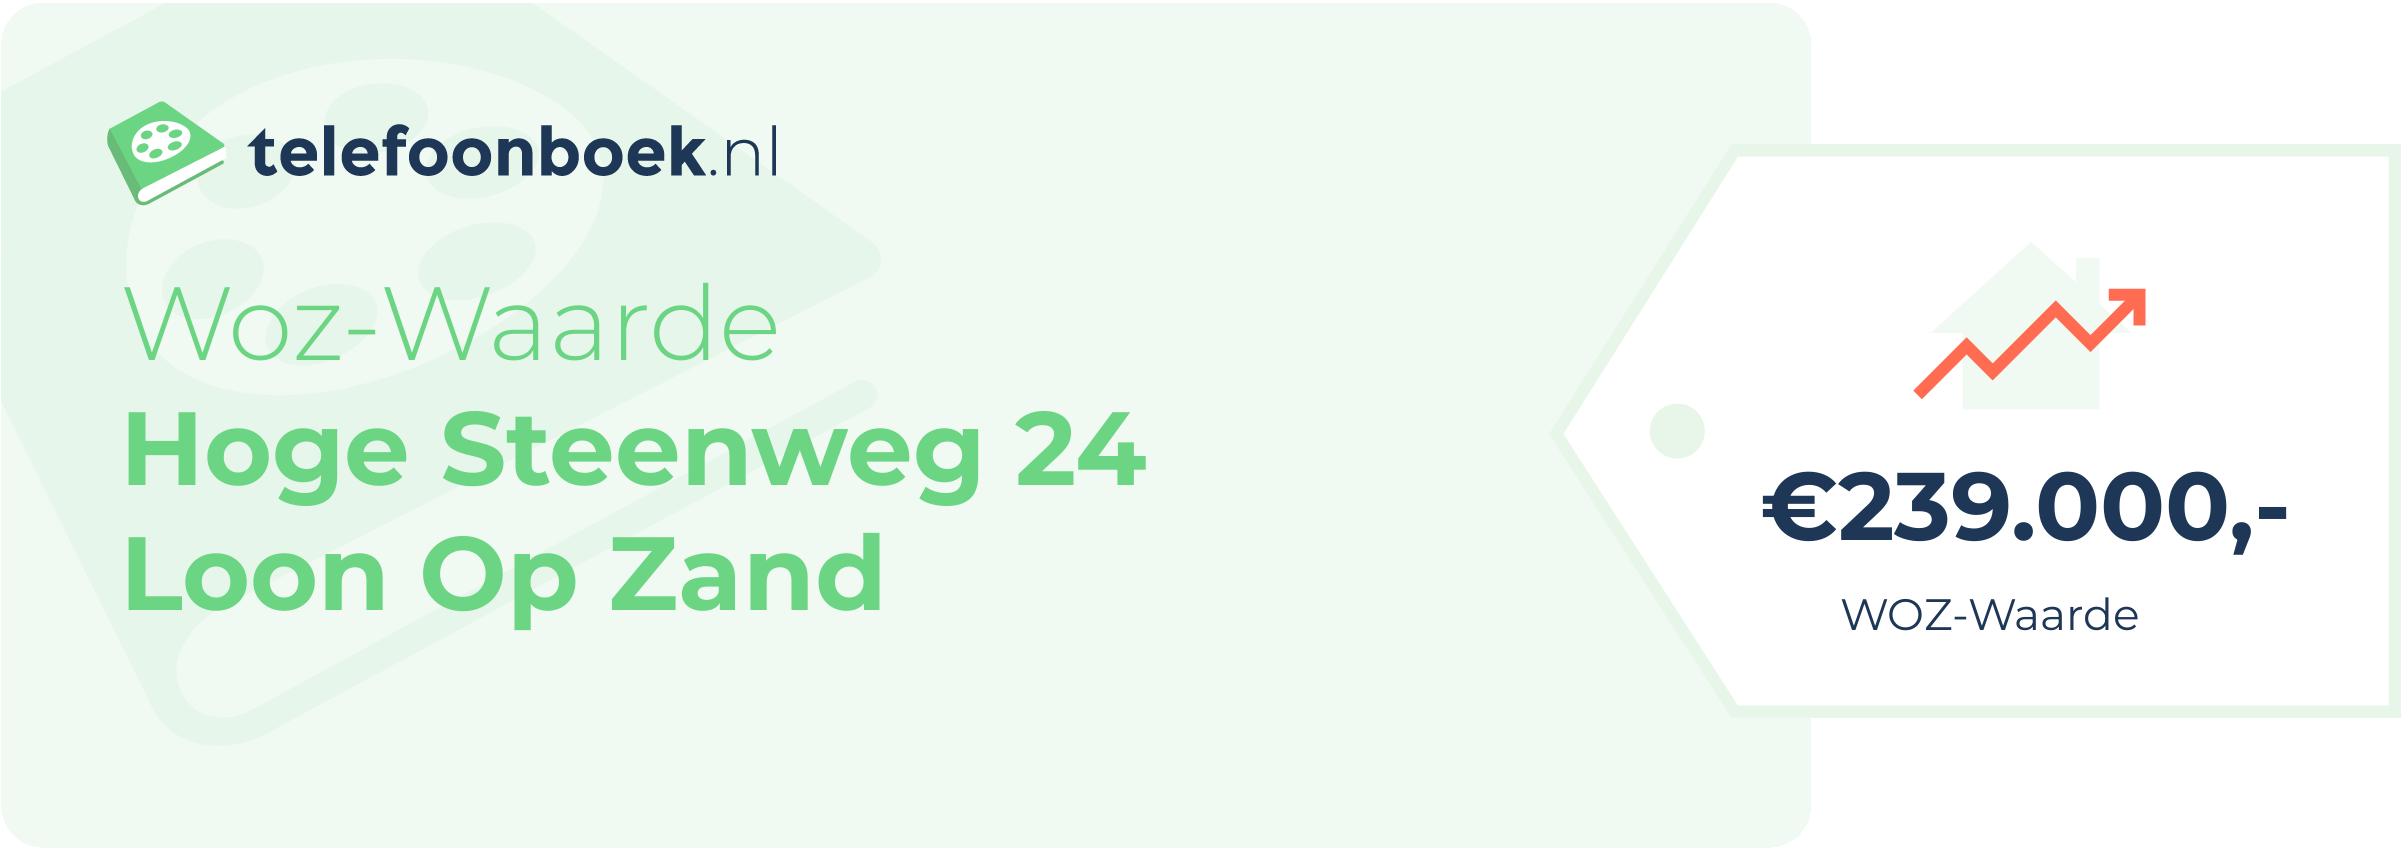 WOZ-waarde Hoge Steenweg 24 Loon Op Zand